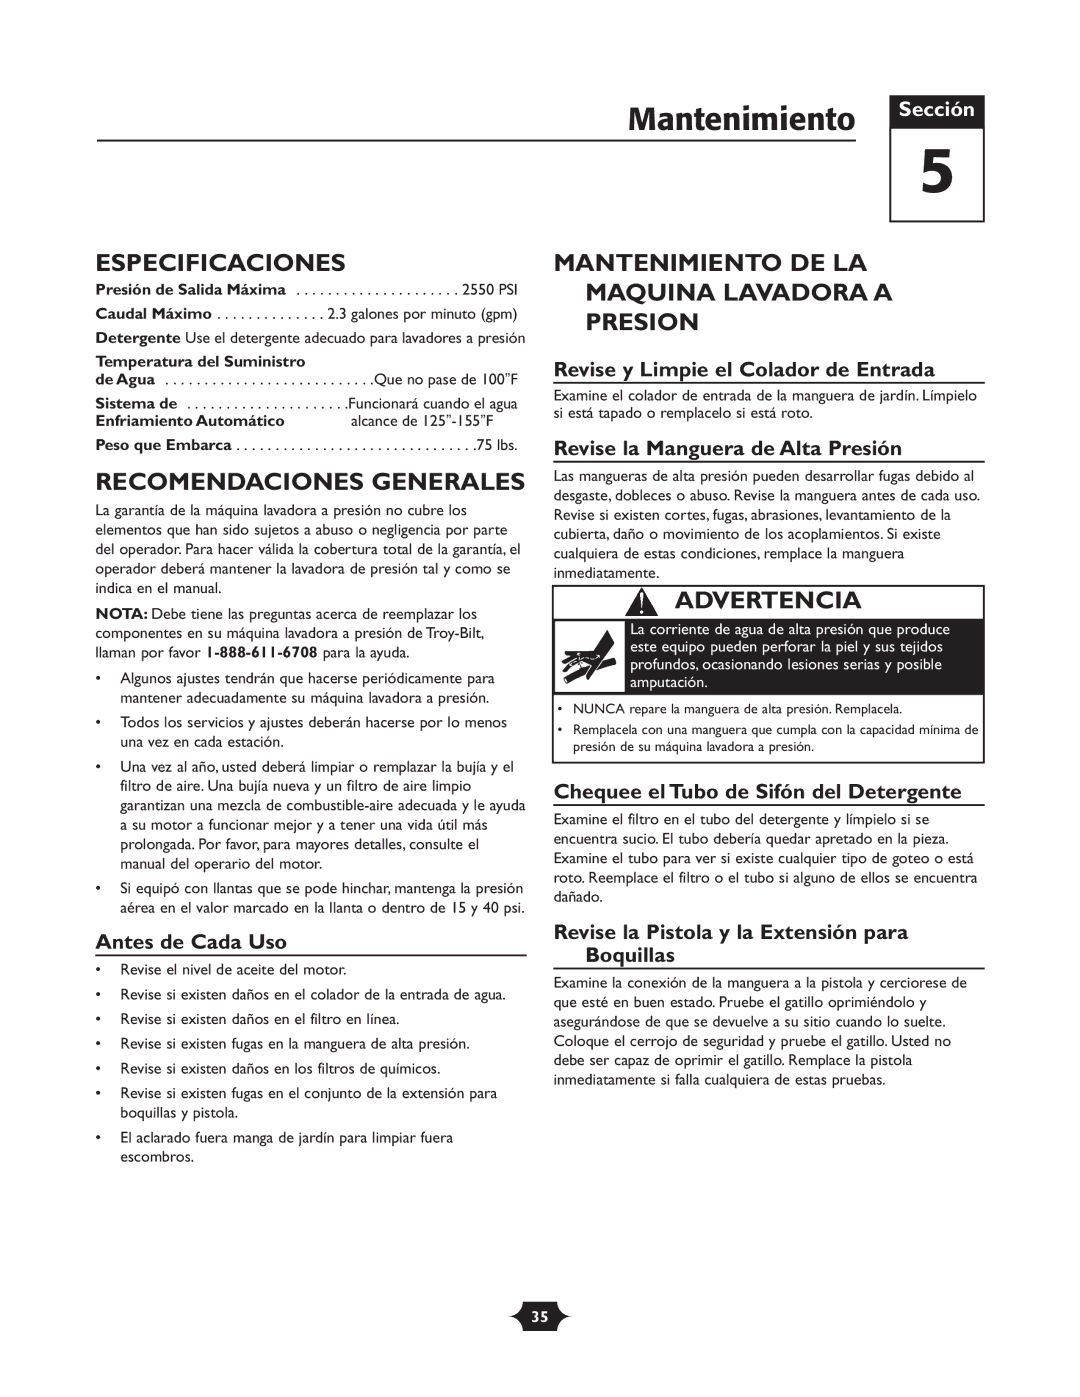 Troy-Bilt 20240 manual Especificaciones, Recomendaciones Generales, Mantenimiento DE LA Maquina Lavadora a Presion 